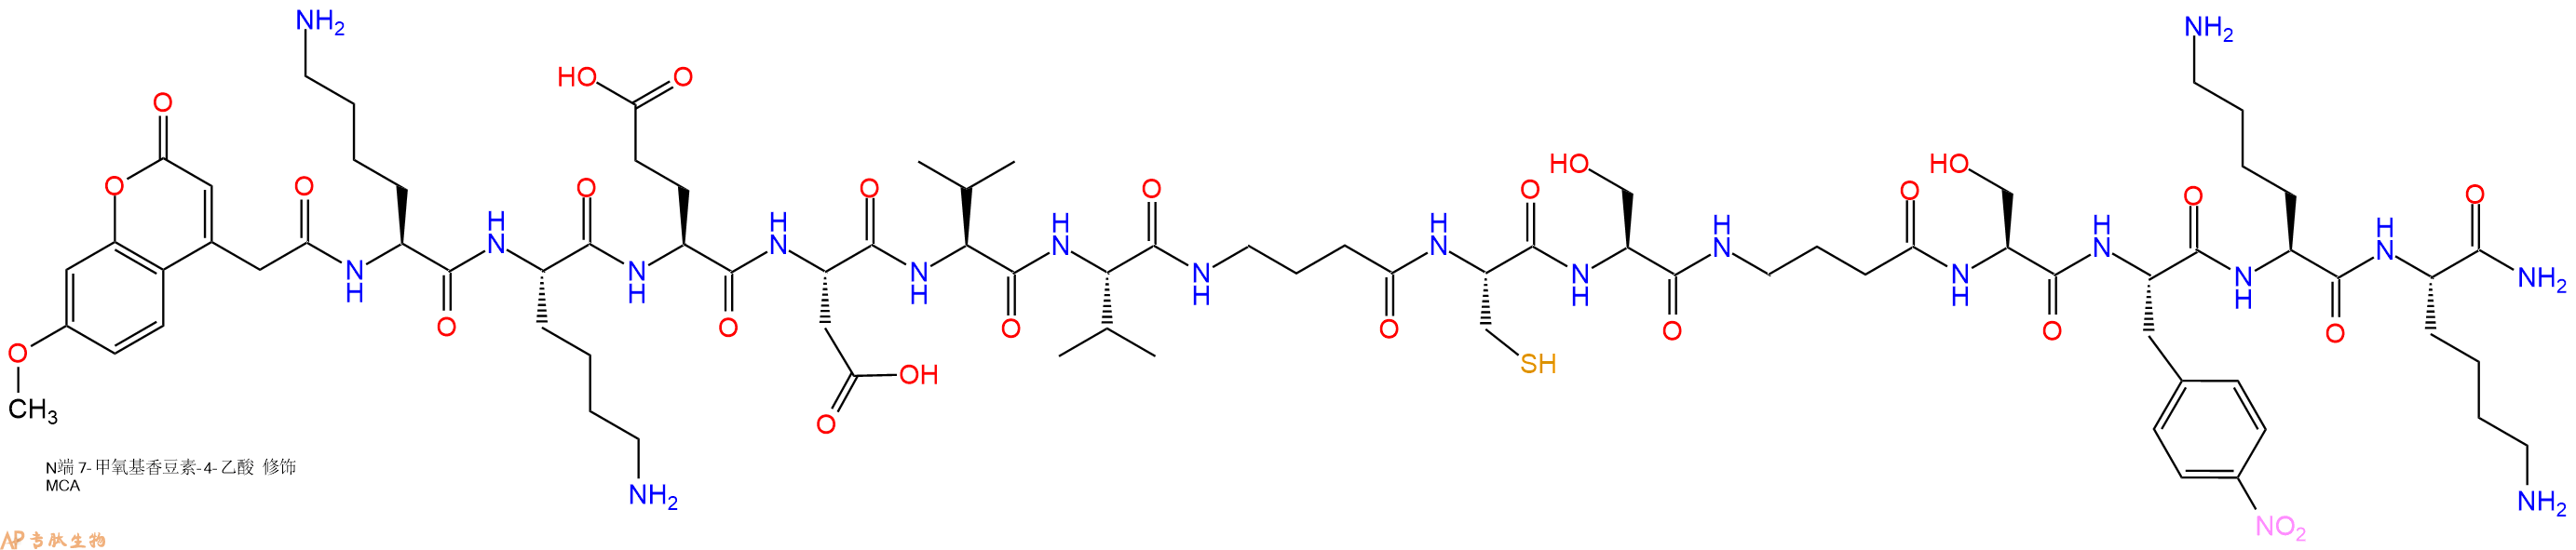 专肽生物产品Mca-Lys-Lys-Glu-Asp-Val-Val-Abu-Cys-Ser-Abu-Ser-p-